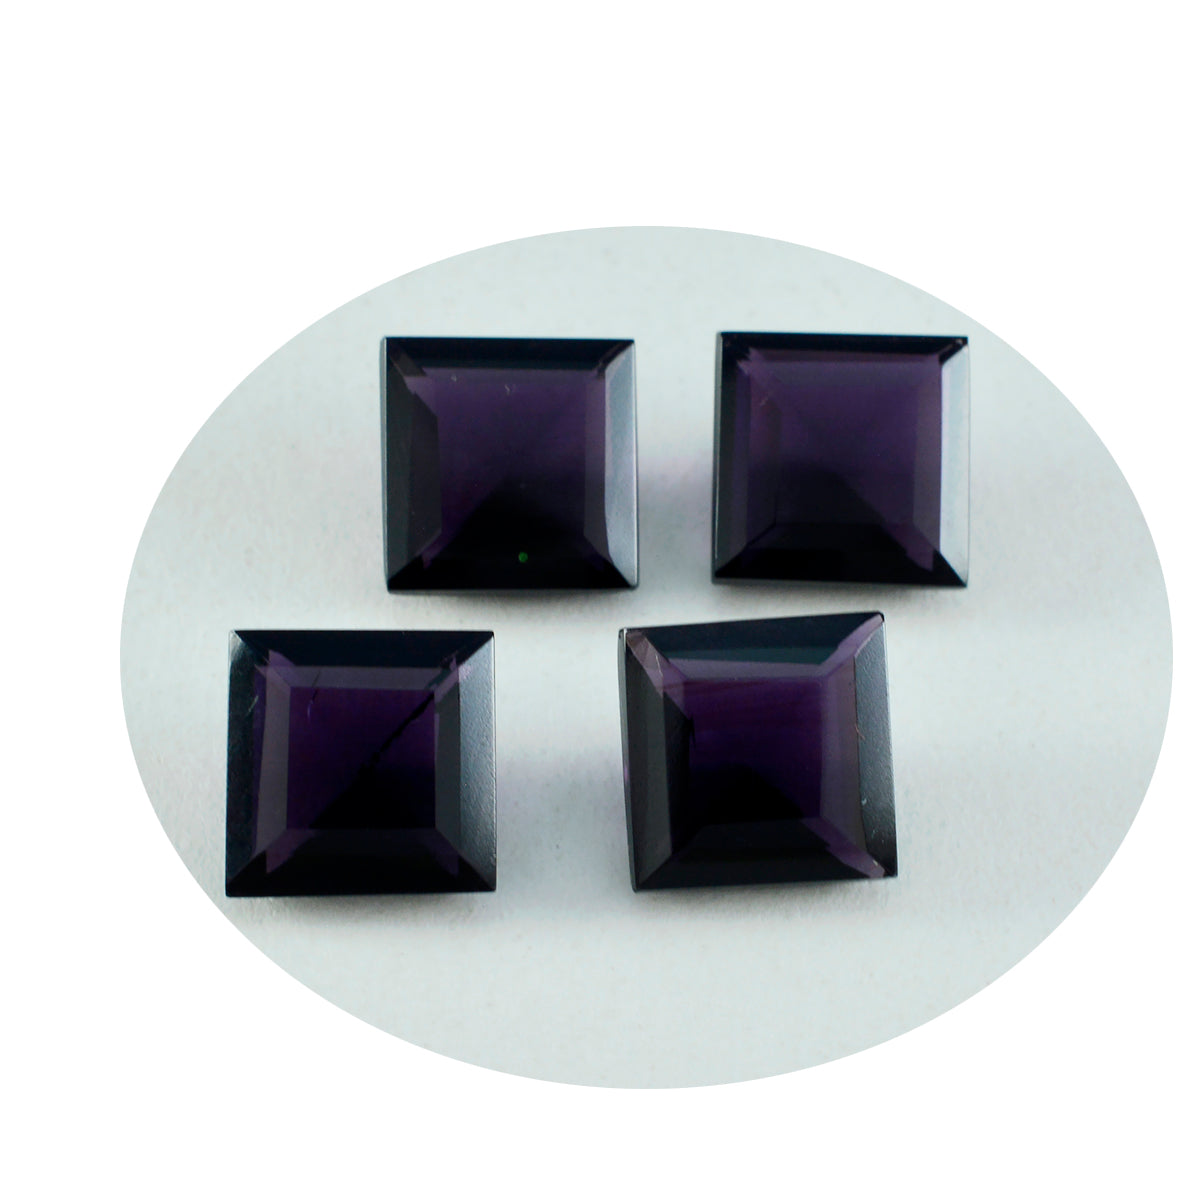 Riyogems 1 Stück violetter Amethyst mit CZ, facettiert, 15 x 15 mm, quadratische Form, A+-Qualitätsstein